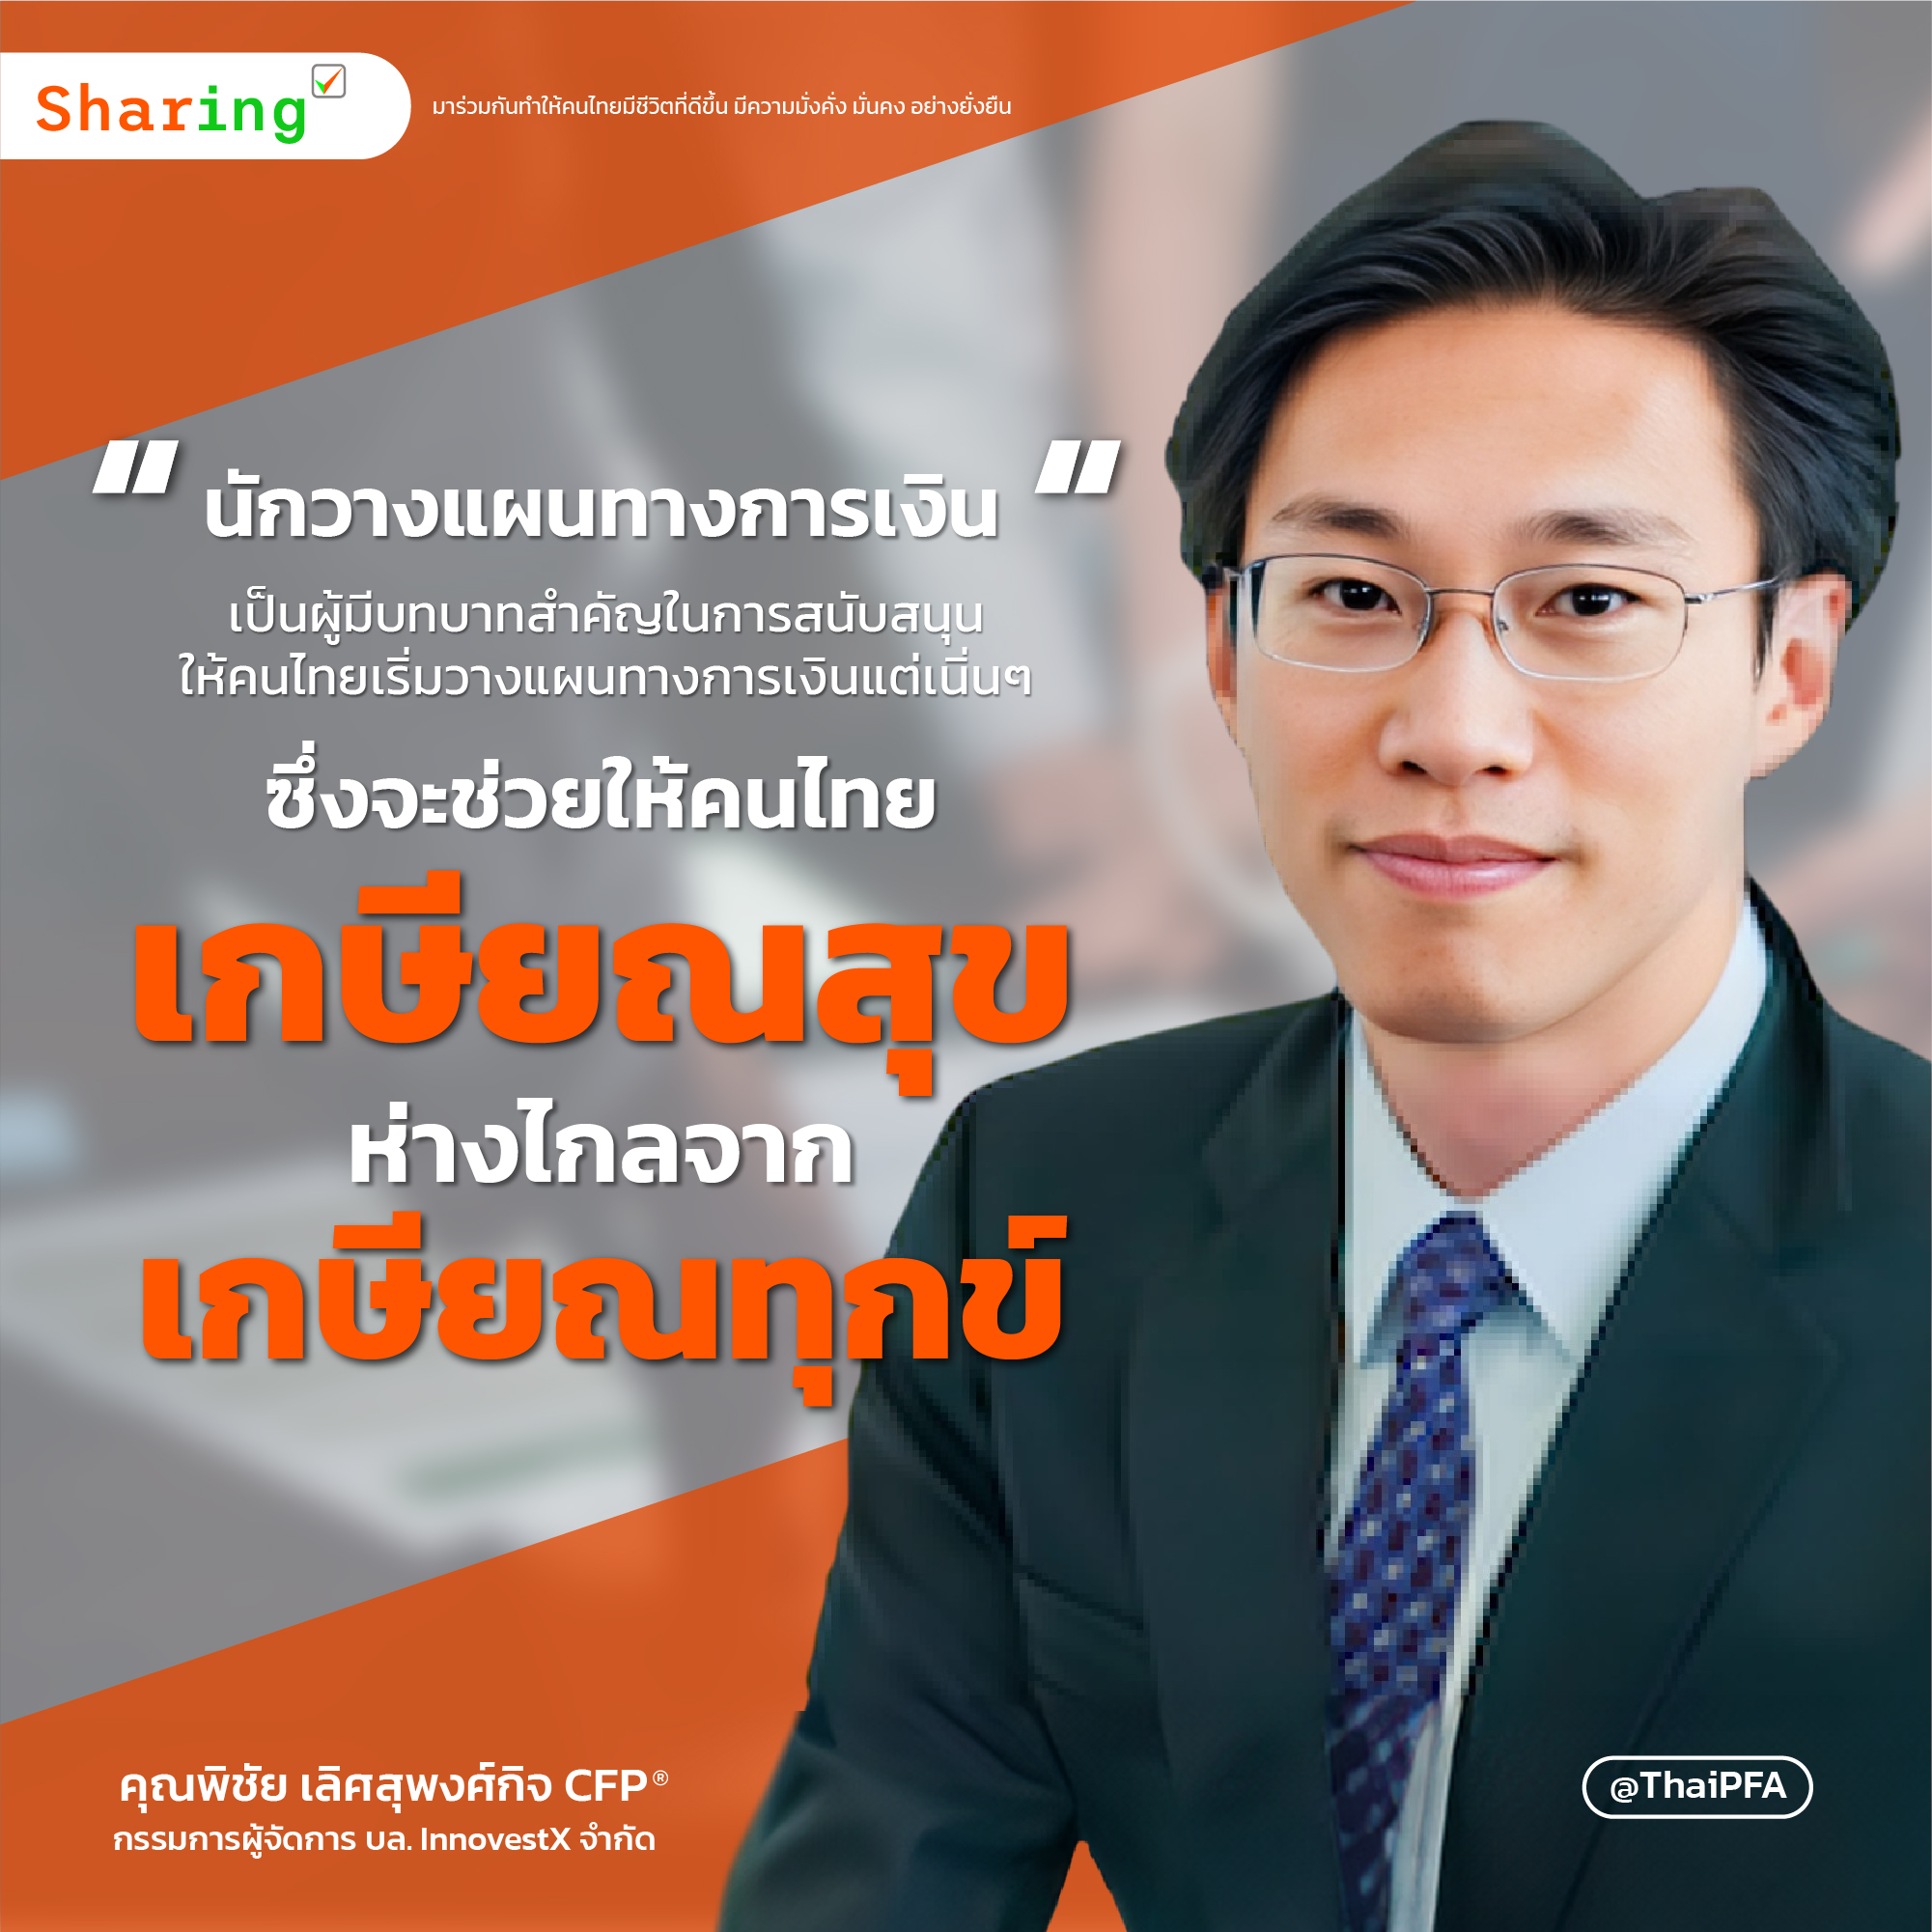 นักวางแผนทางการเงินเป็นผู้มีบทบาทสำคัญในการสนับสนุนให้คนไทยเริ่มวางแผนทางการเงินแต่เนิ่นๆ ซึ่งจะช่วยให้คนไทย เกษียณสุข ห่างไกลจาก เกษียณทุกข์ 